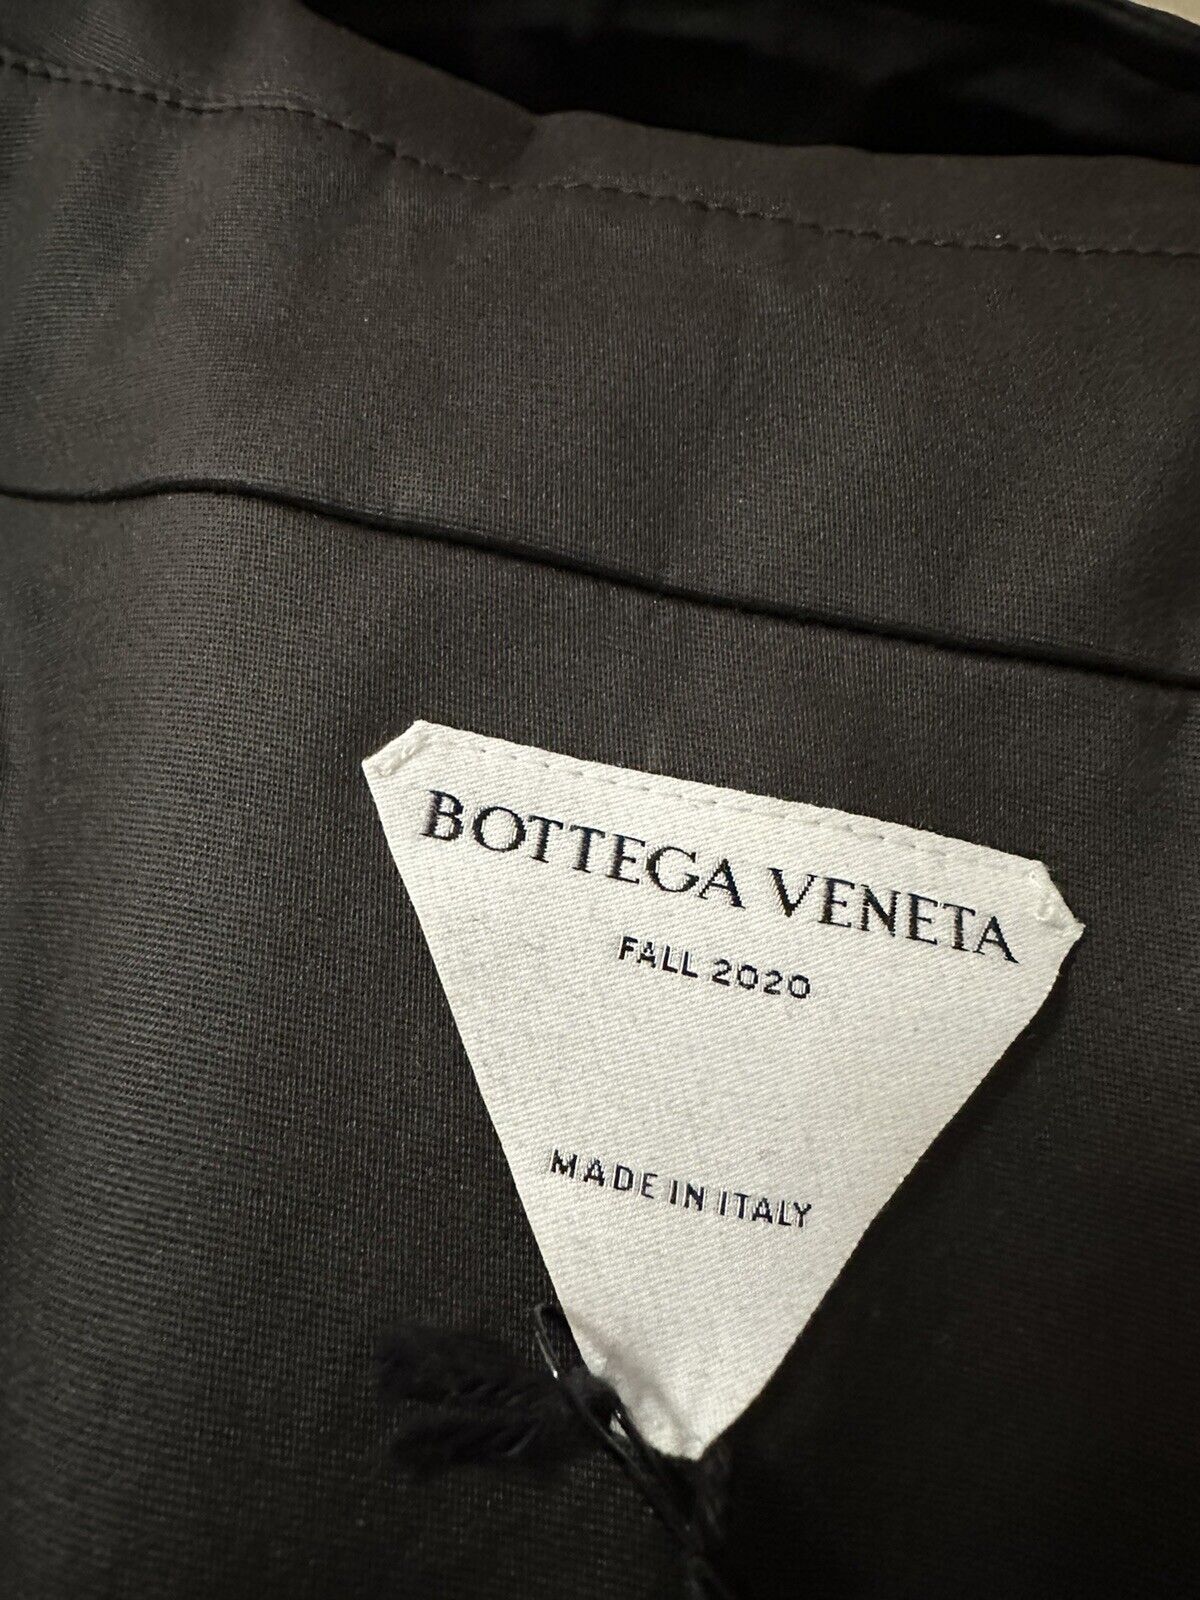 Новый мужской плащ Bottega Veneta из эластичного хлопка цвета DK шоколад S за 3100 долларов США